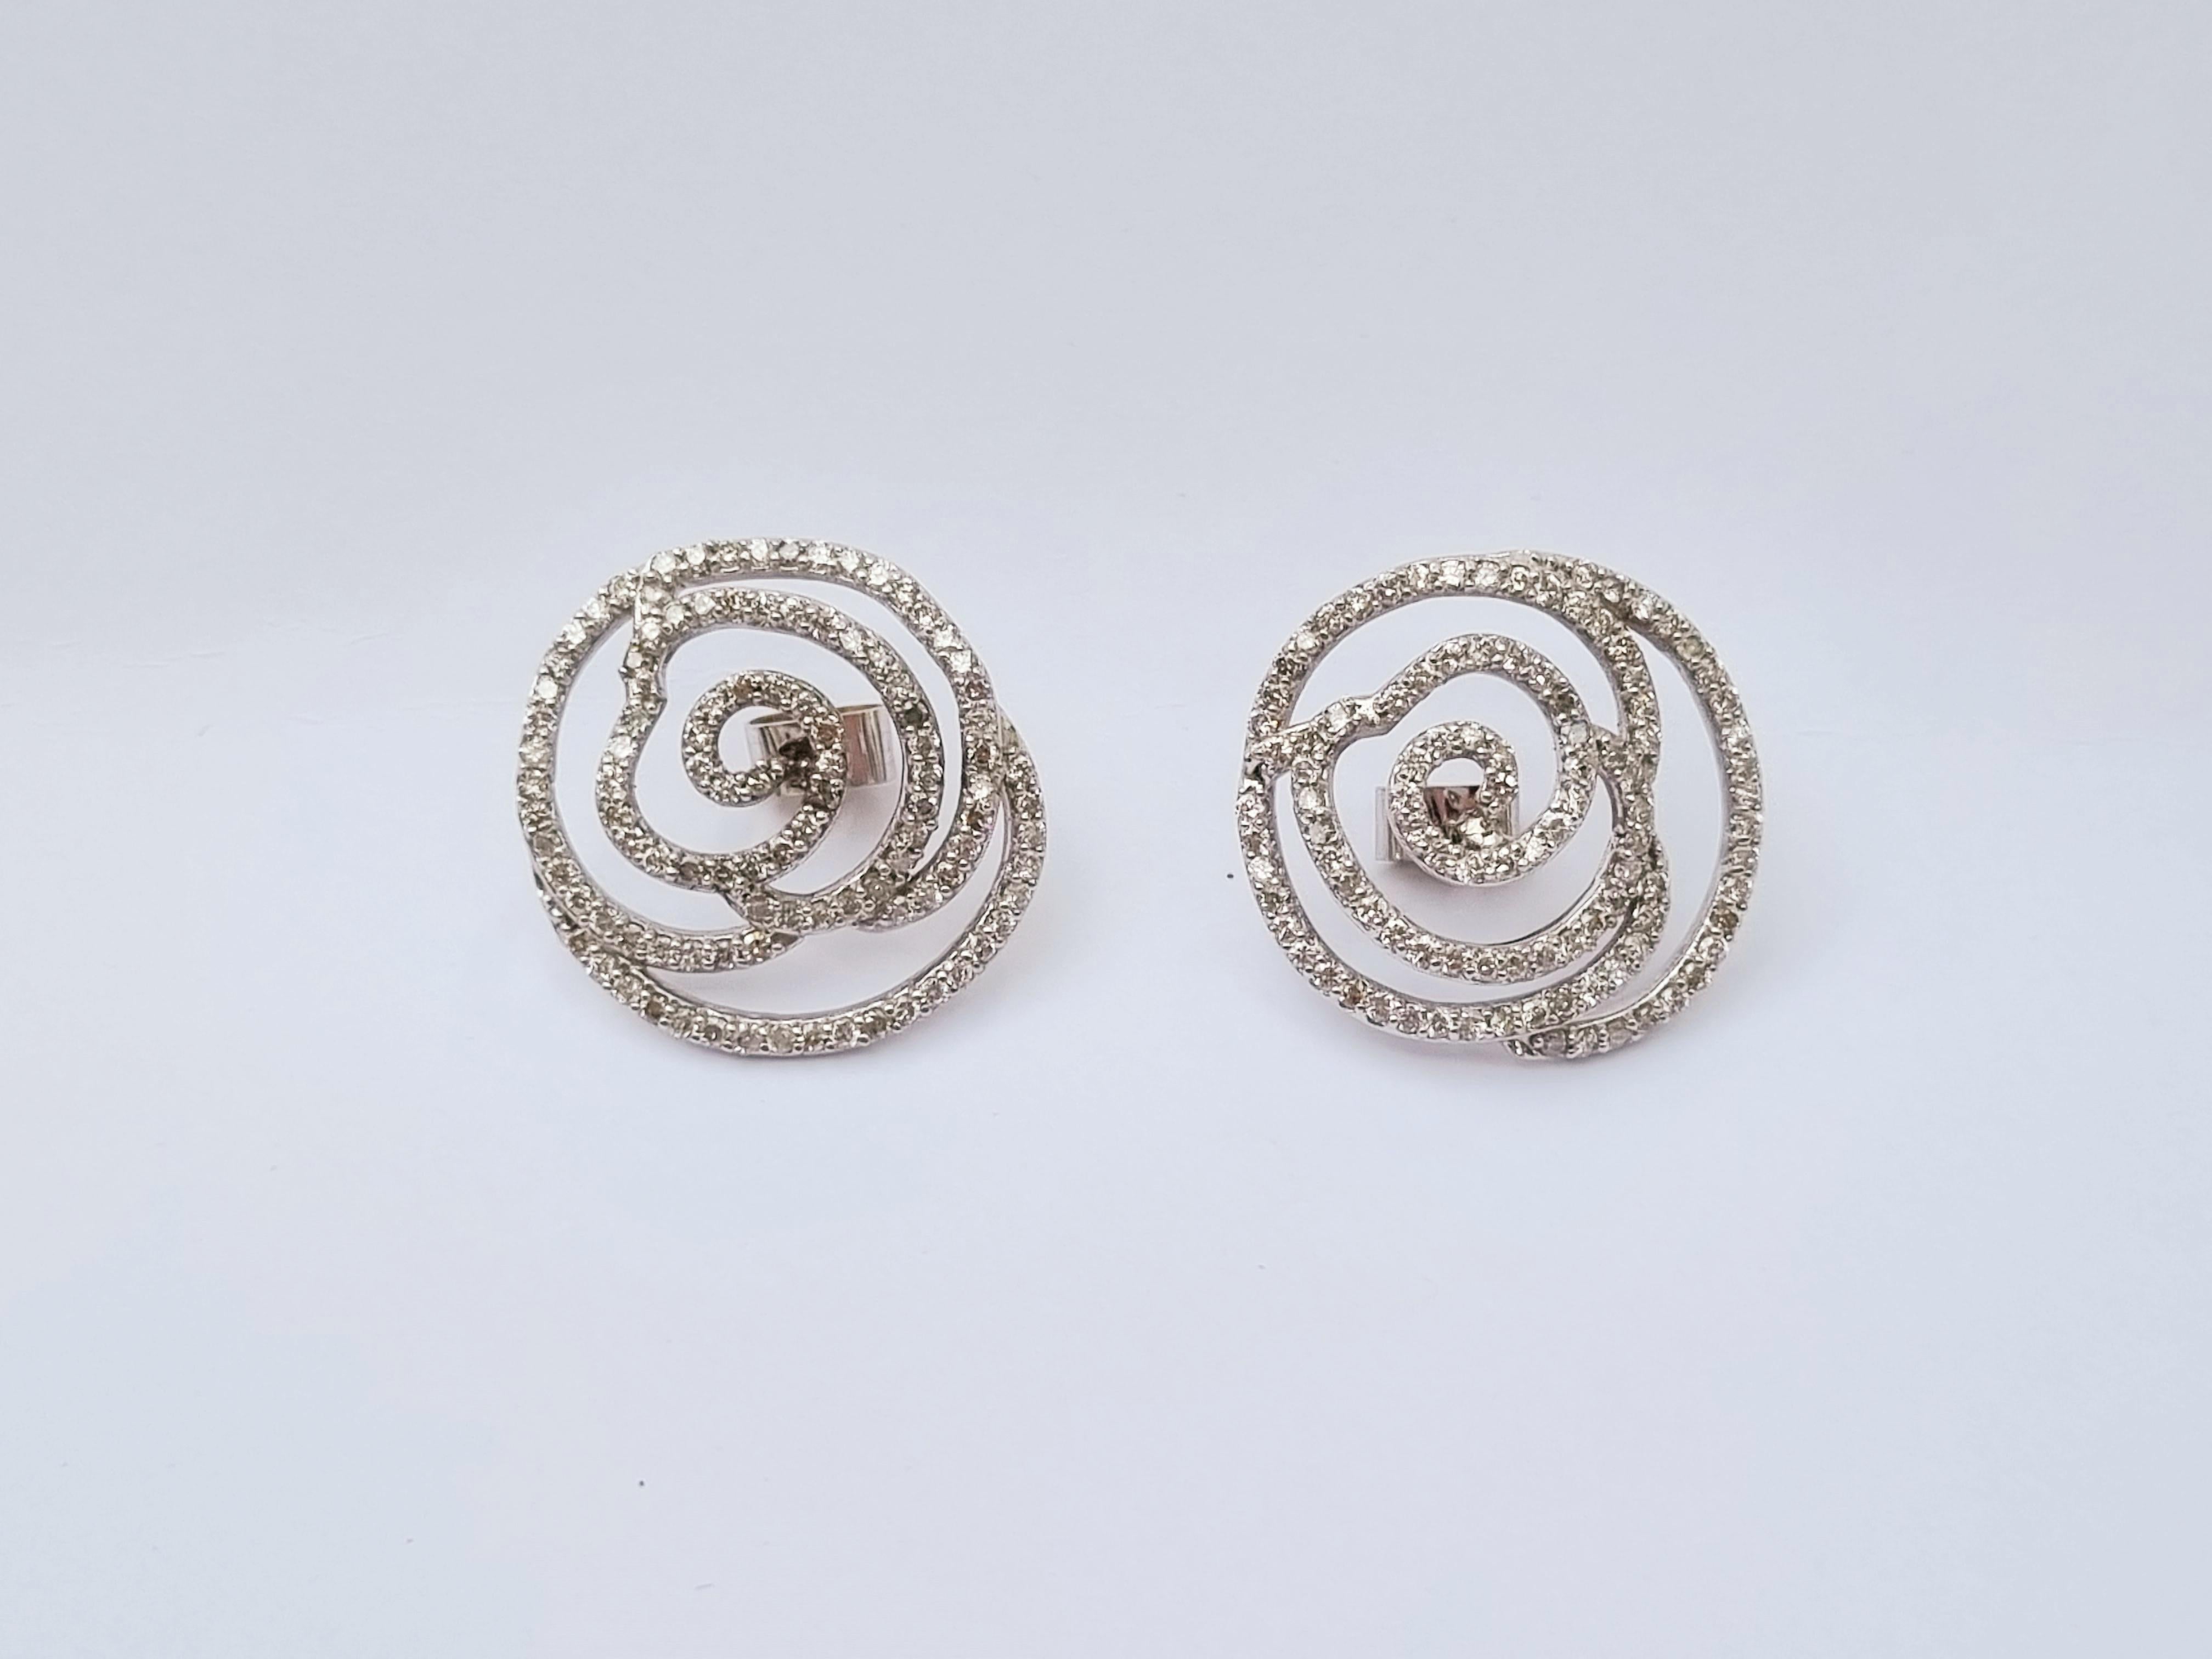 Ein wunderschönes Paar 2,63-karätiger Diamantohrringe, inspiriert von weißen Rosen. Sie sind elegant und modern und lassen sich sowohl zu Tages- als auch zu Abendgarderobe und zu allen Arten von Anlässen problemlos tragen. 

Durchmesser: 2,5